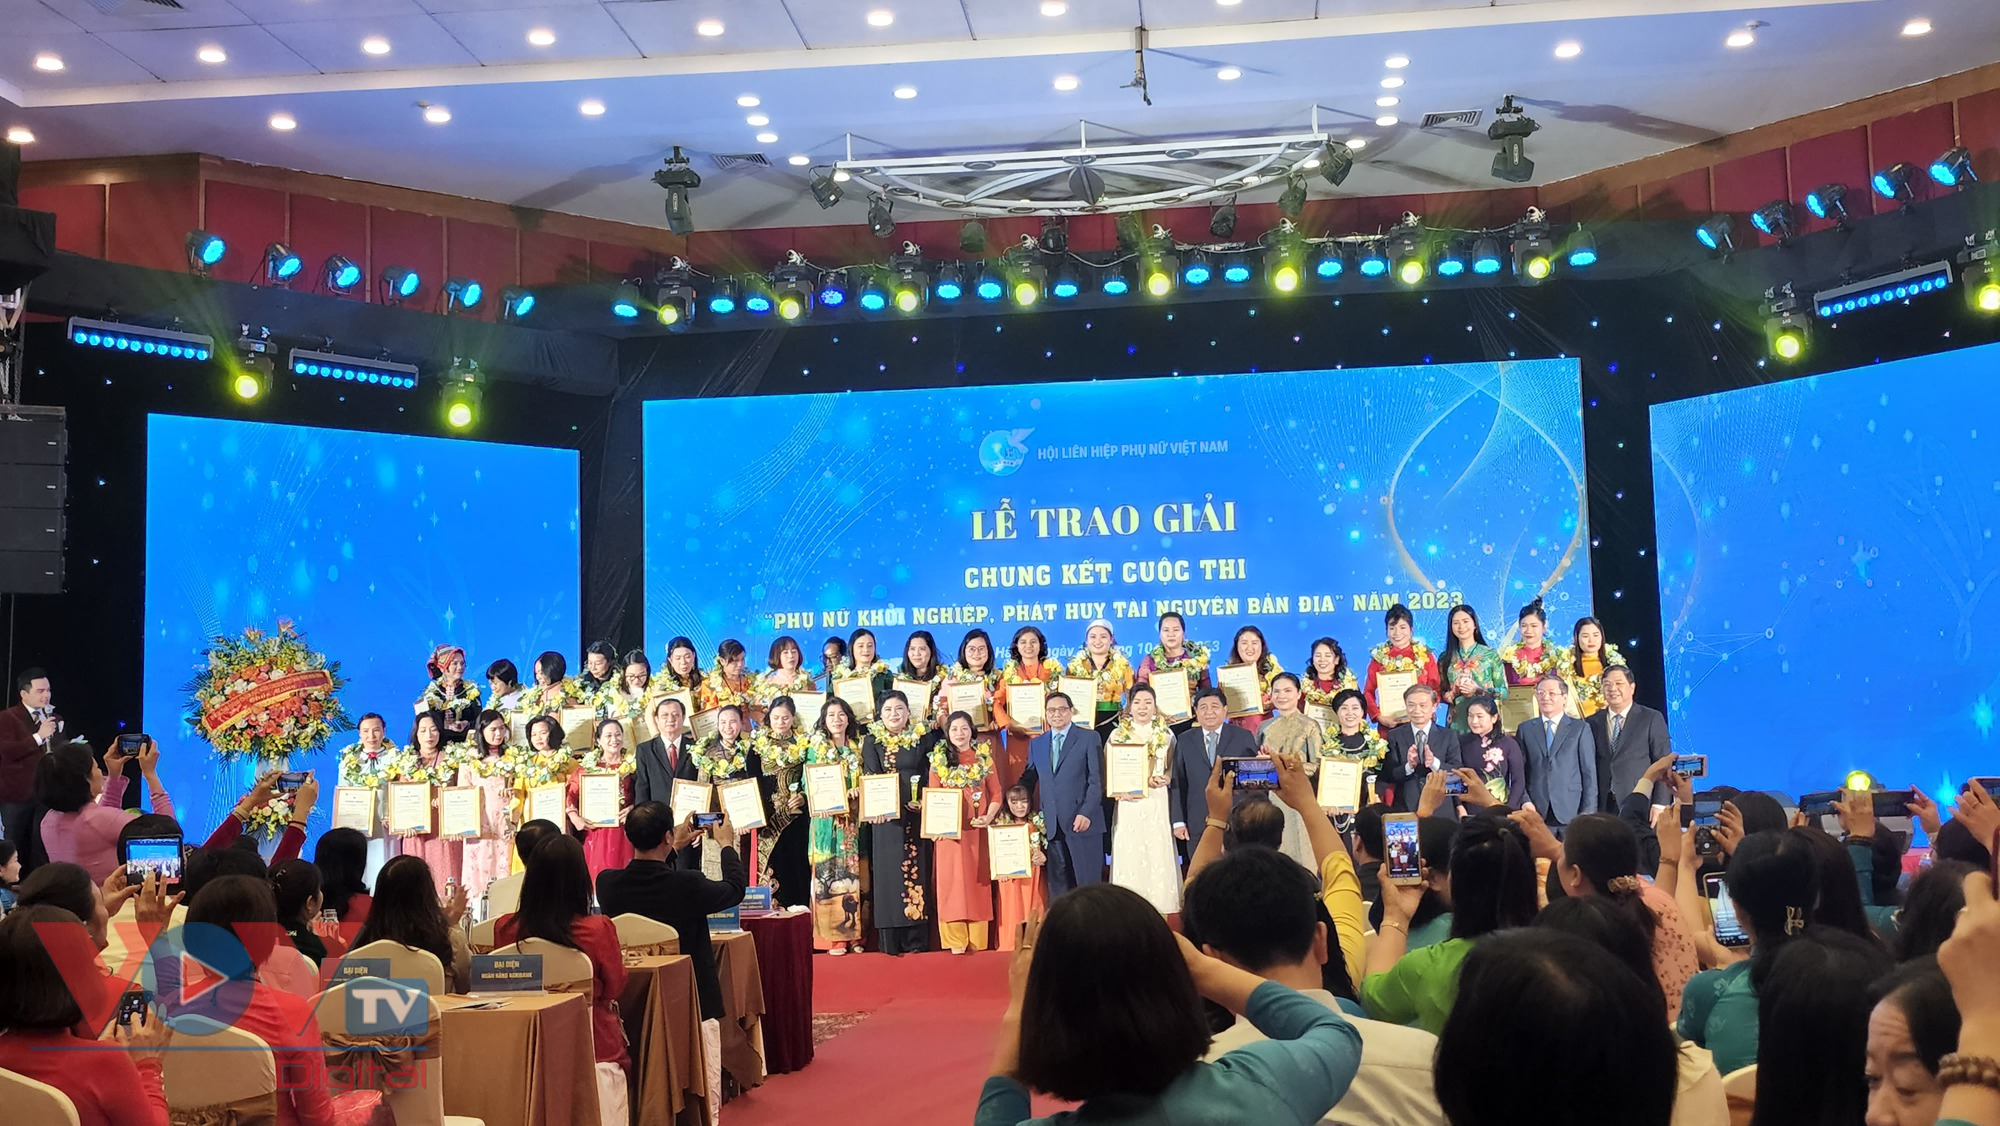 Thủ tướng Phạm Minh Chính dự lễ trao giải Chung kết toàn quốc Cuộc thi “Phụ nữ khởi nghiệp, phát huy tài năng nguyên bản địa” - Ảnh 2.